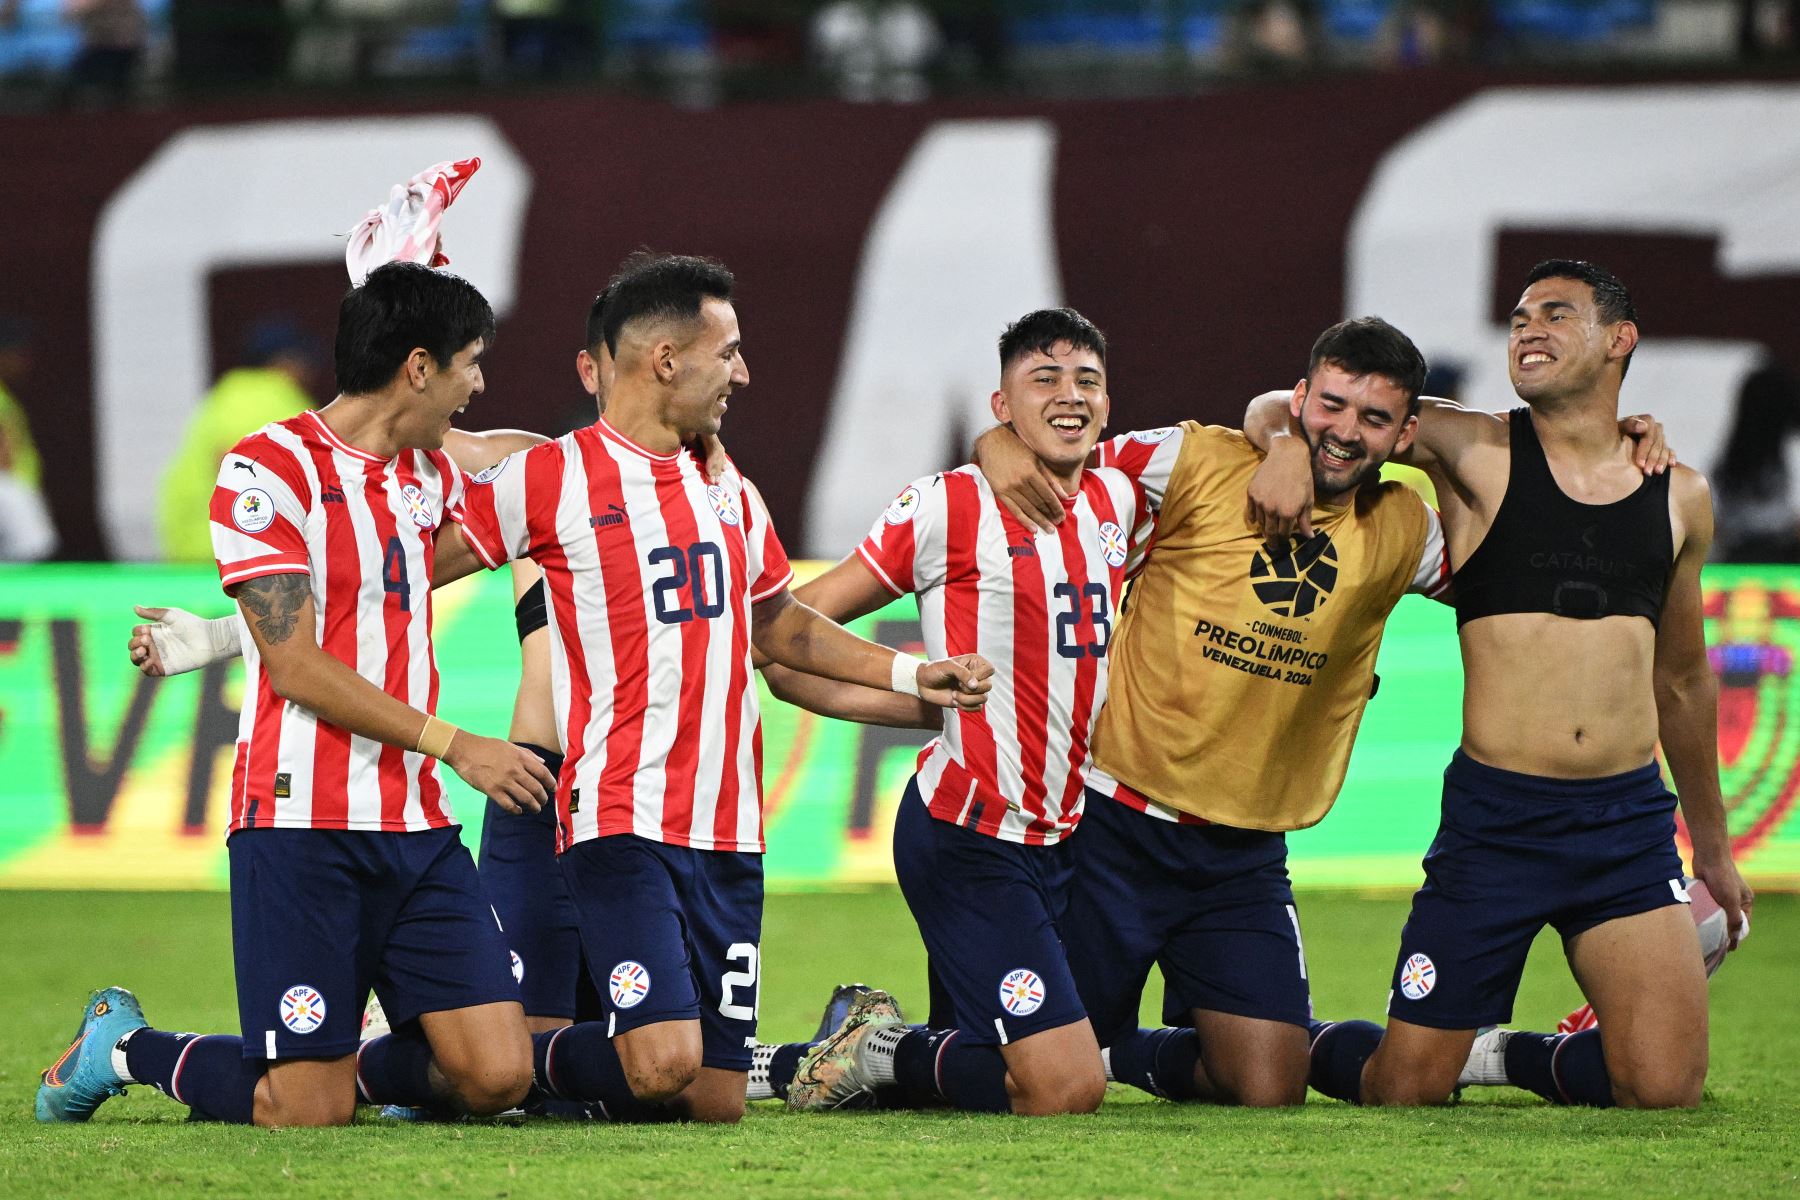 Los jugadores de Paraguay celebran después de derrotar a Venezuela y clasificarse para los Juegos Olímpicos de París 2024 durante el partido de fútbol del Torneo Preolímpico CONMEBOL .
Foto: AFP